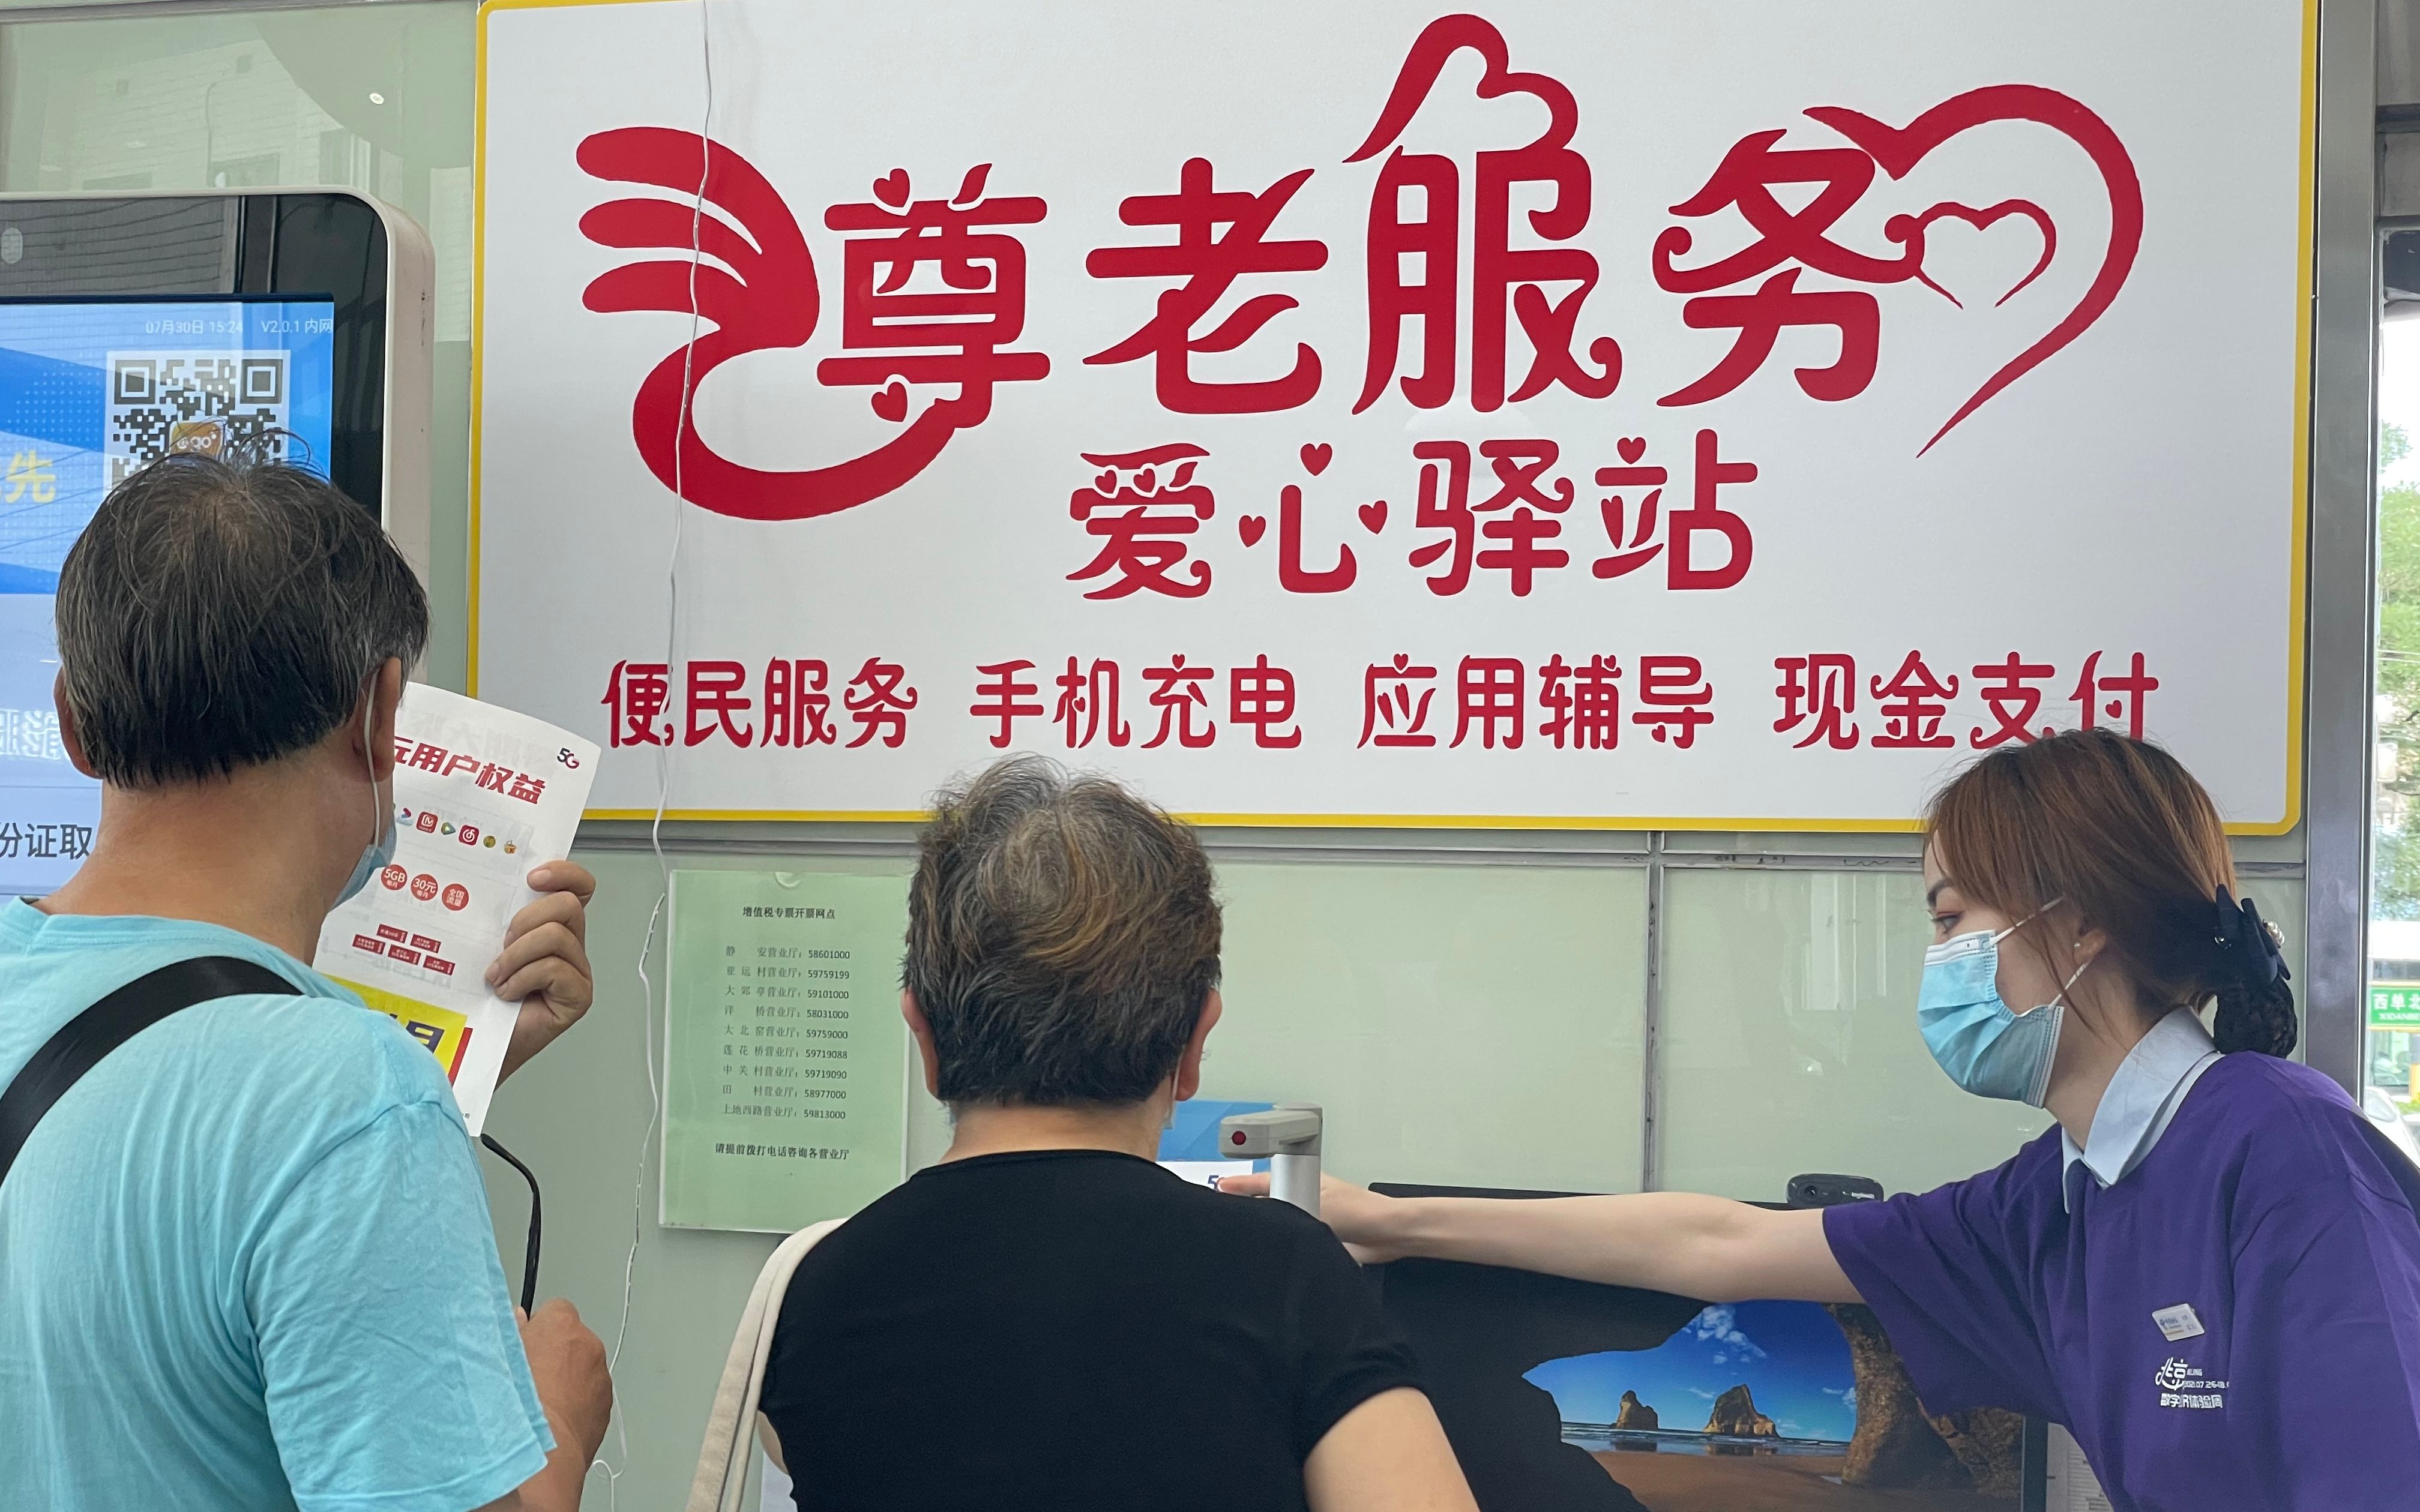 电信营业厅工作人员在为老人进行产品介绍。新京报记者 许诺 摄